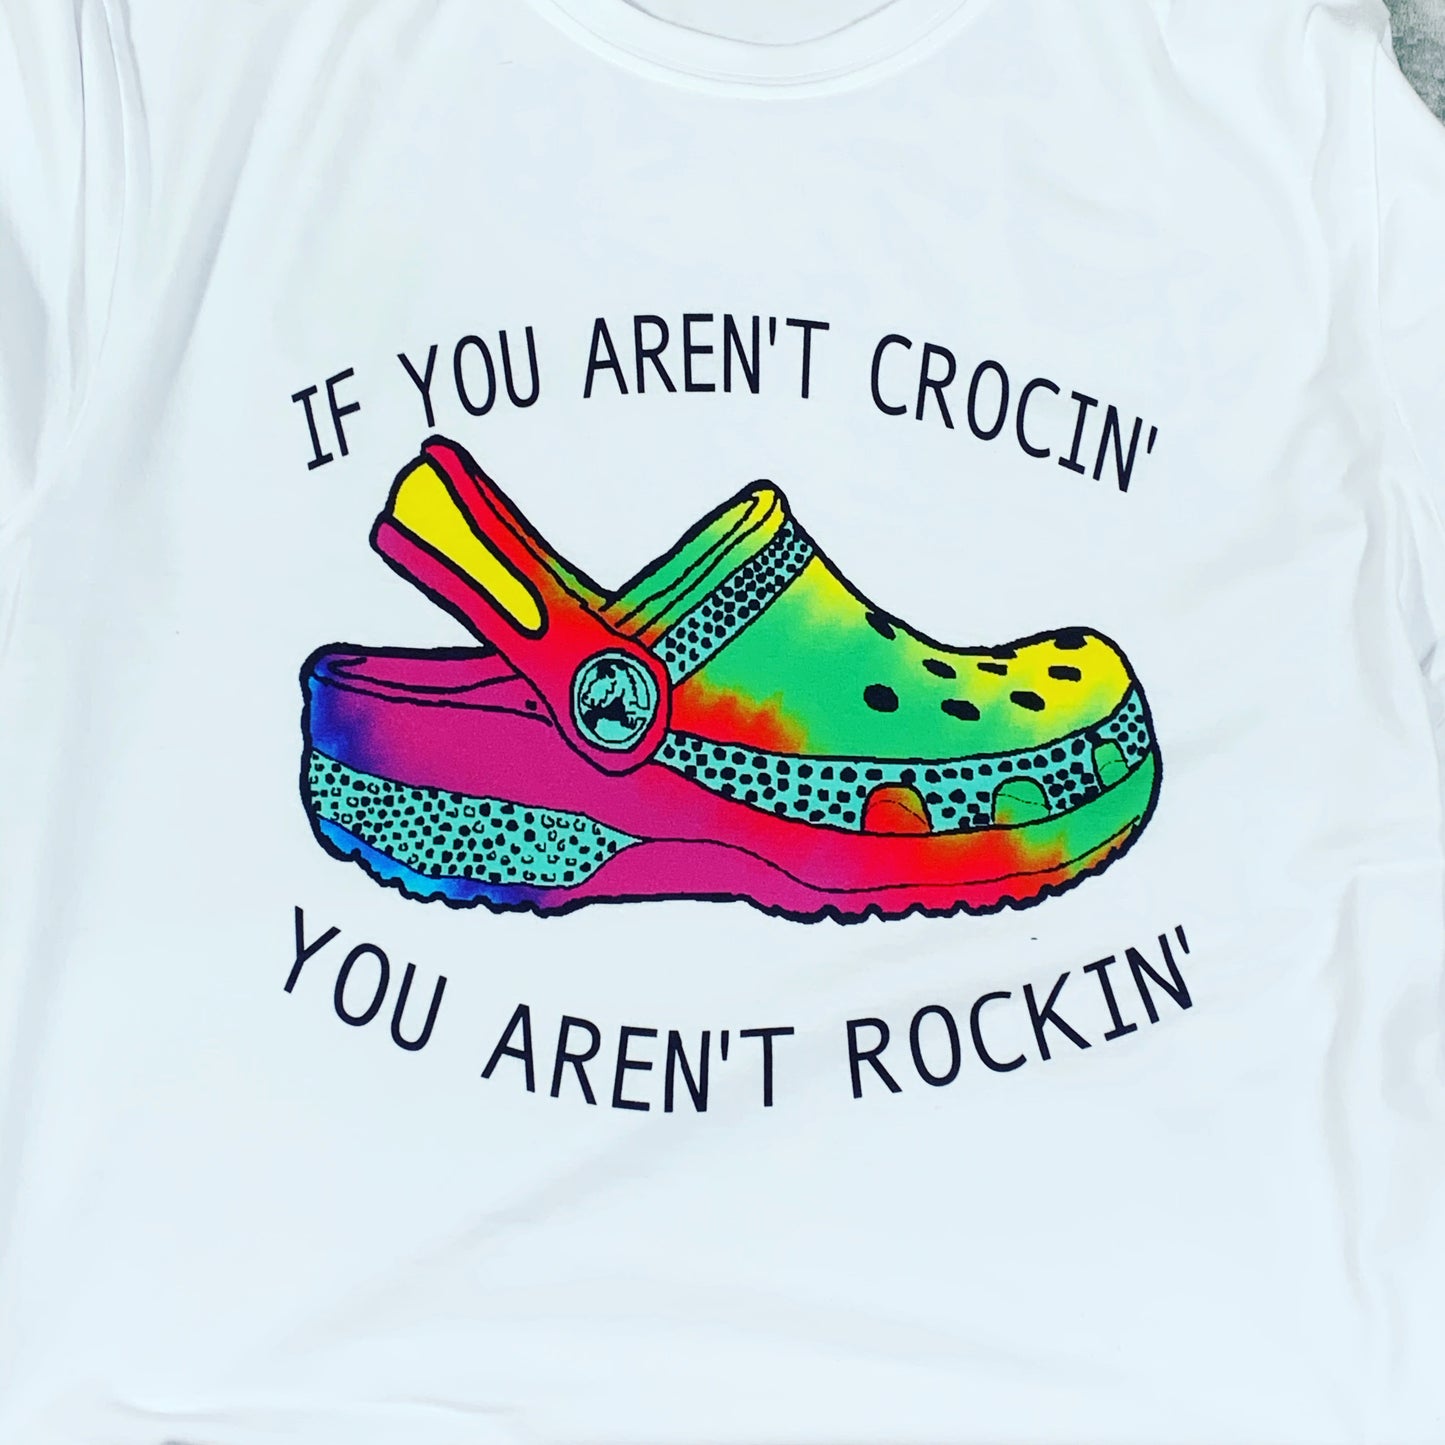 If You Aren’t Crocin’